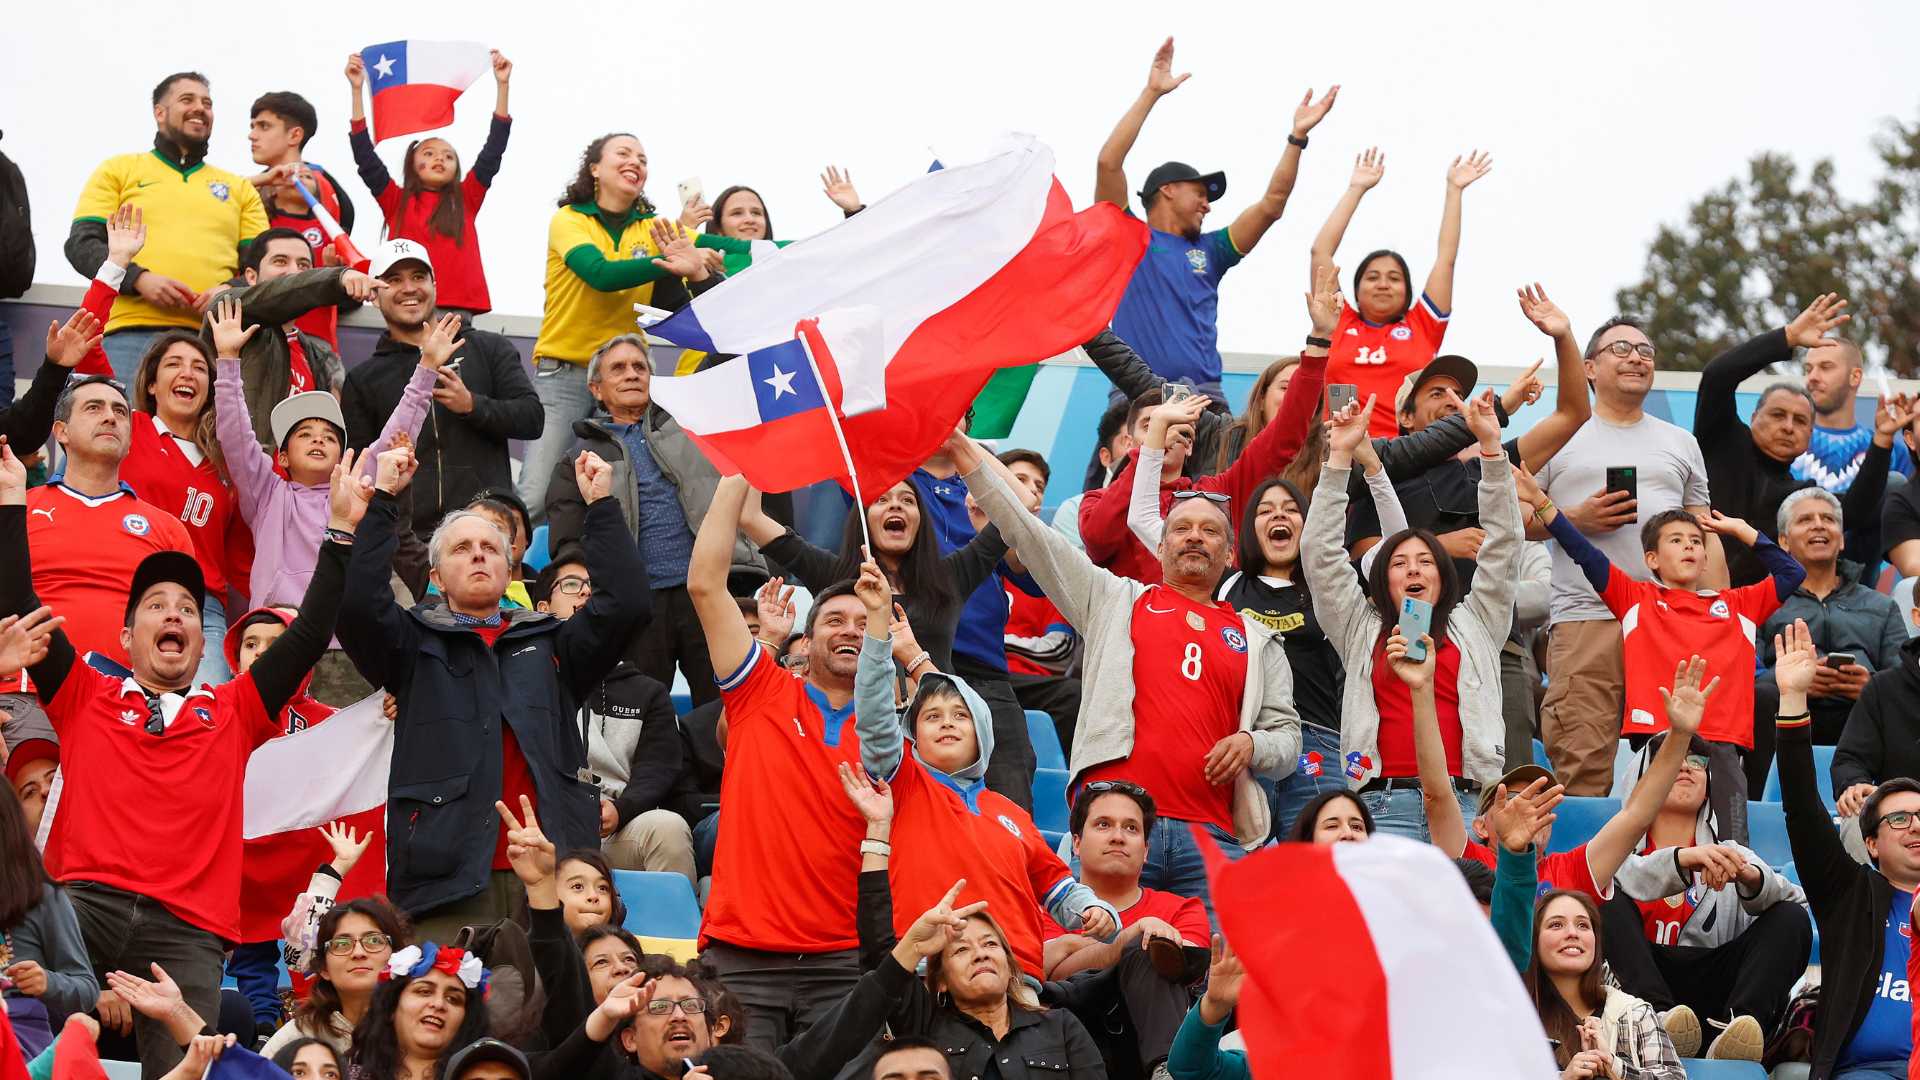 Programa domingo 5 de noviembre: La fiesta continental se despide tras hacer vibrar y soñar a todo Chile